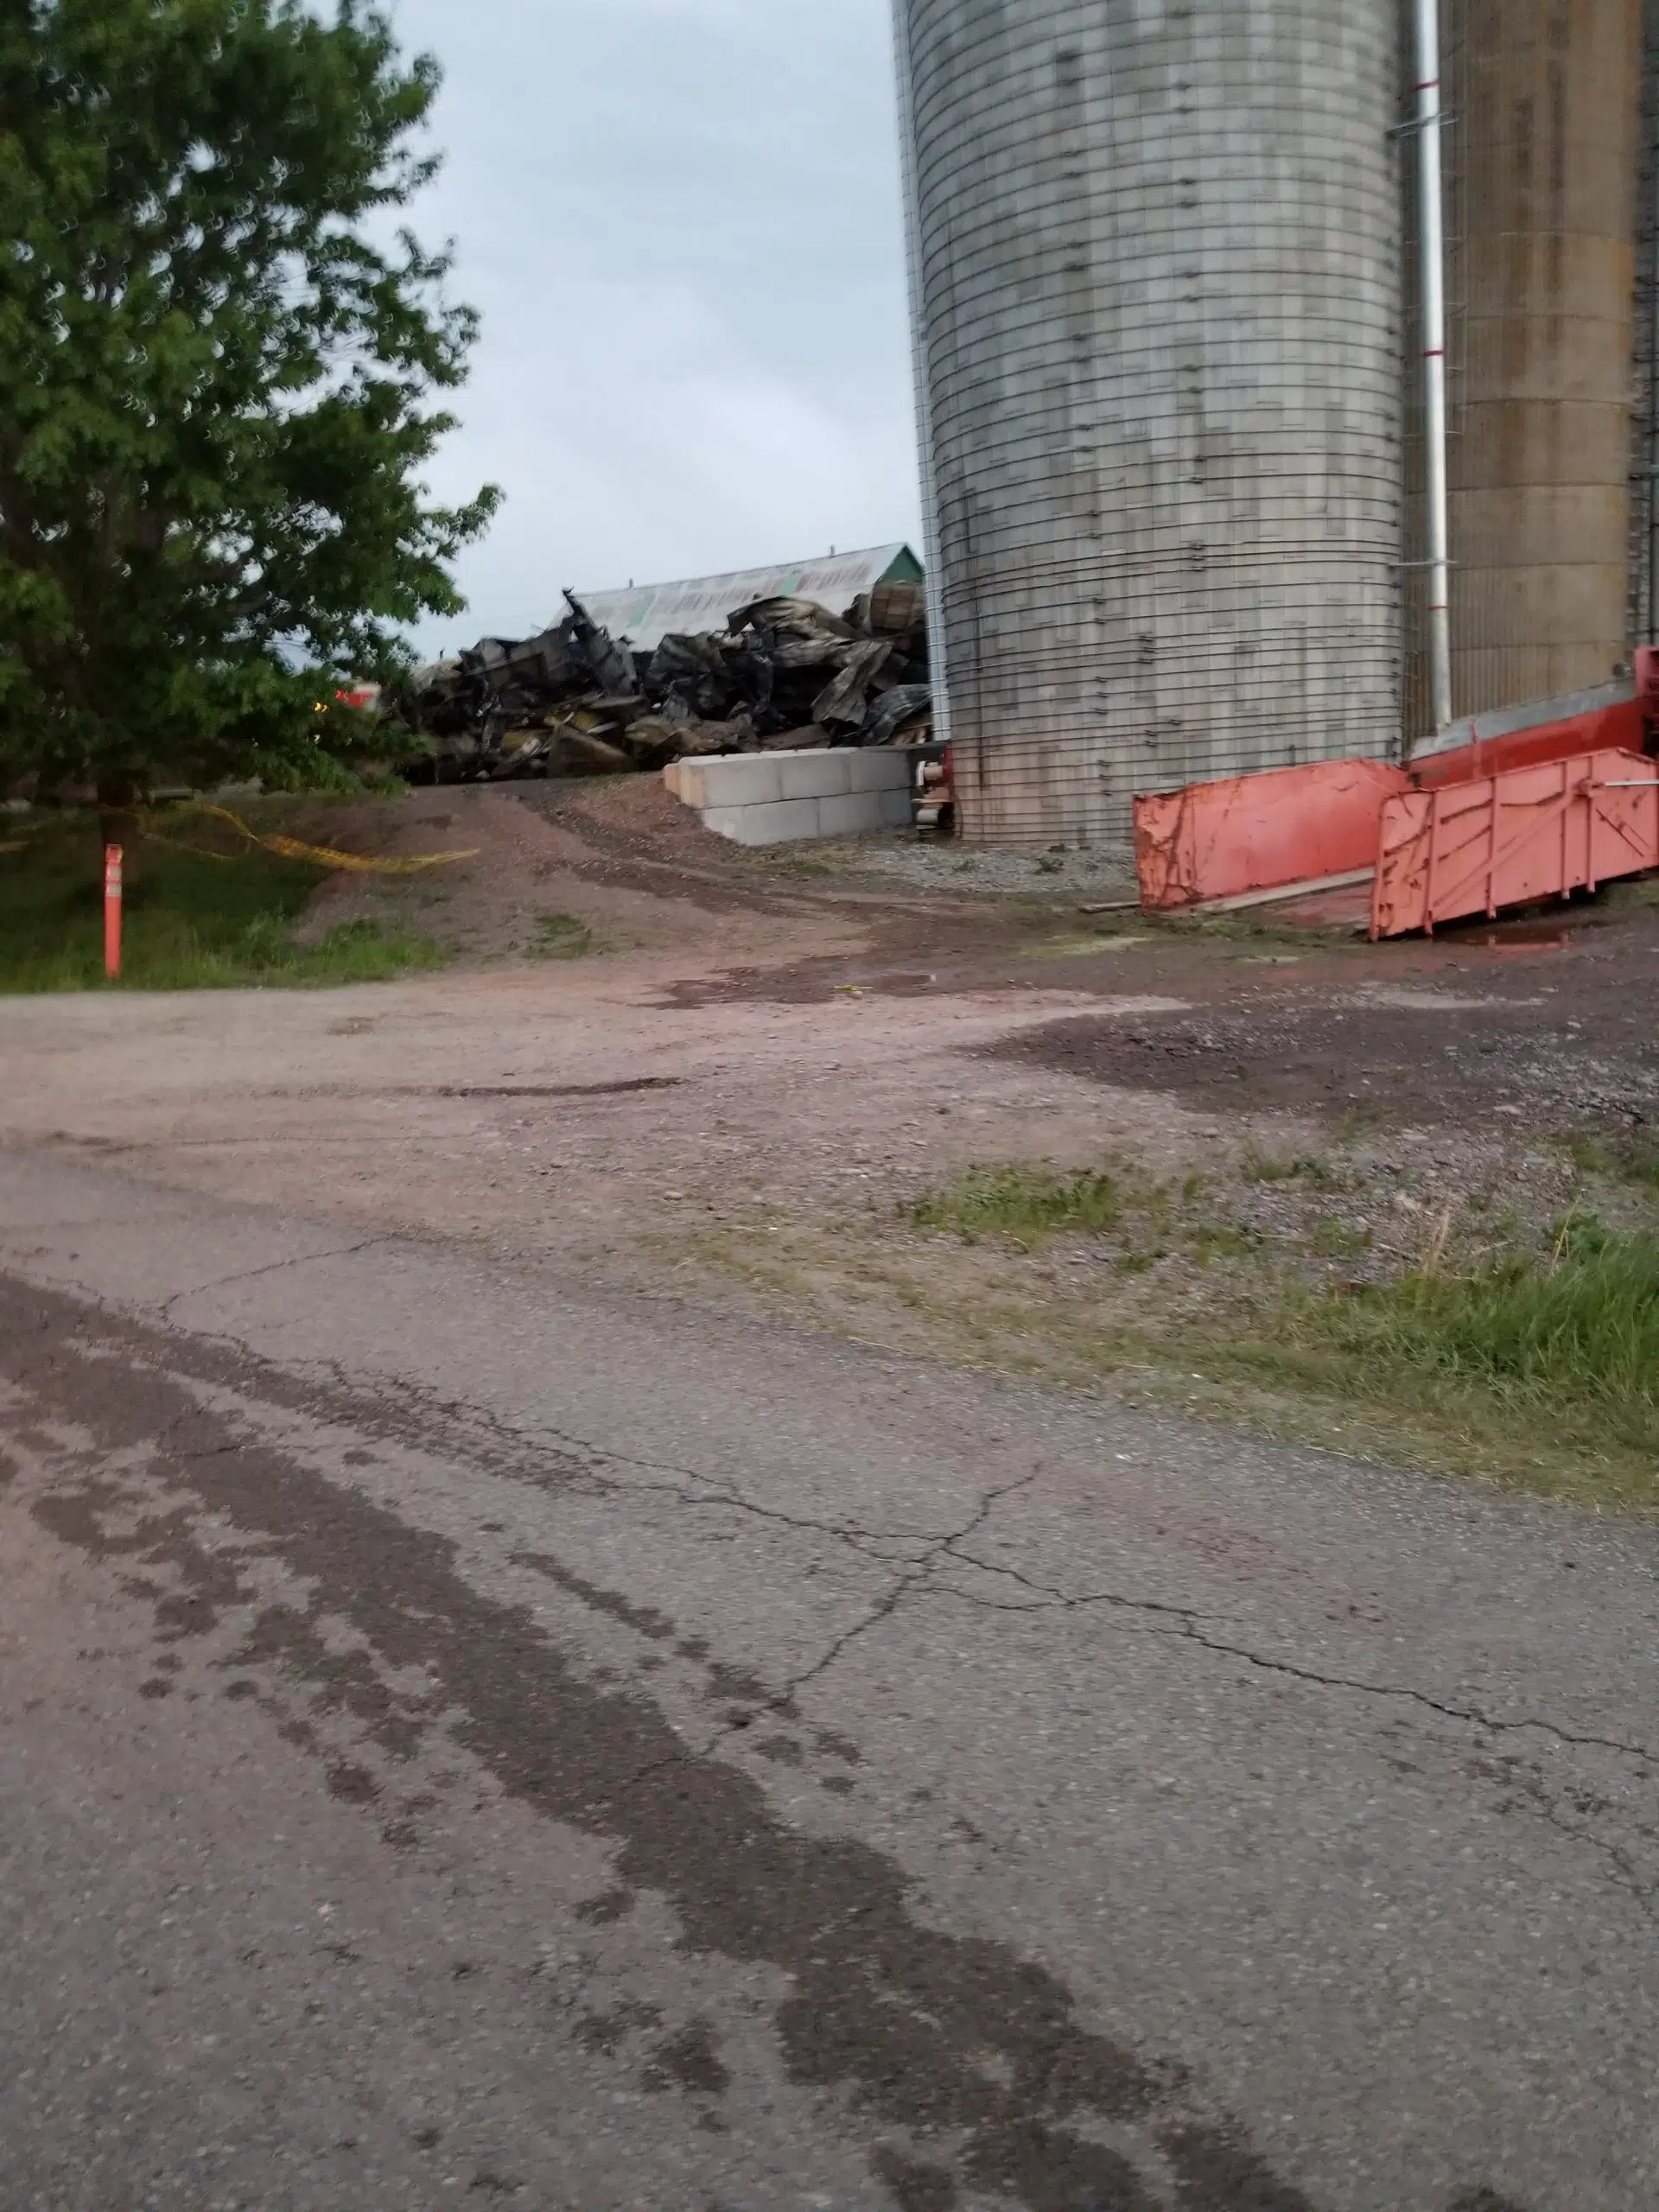 Antigonish Co. dairy barn burns to the ground